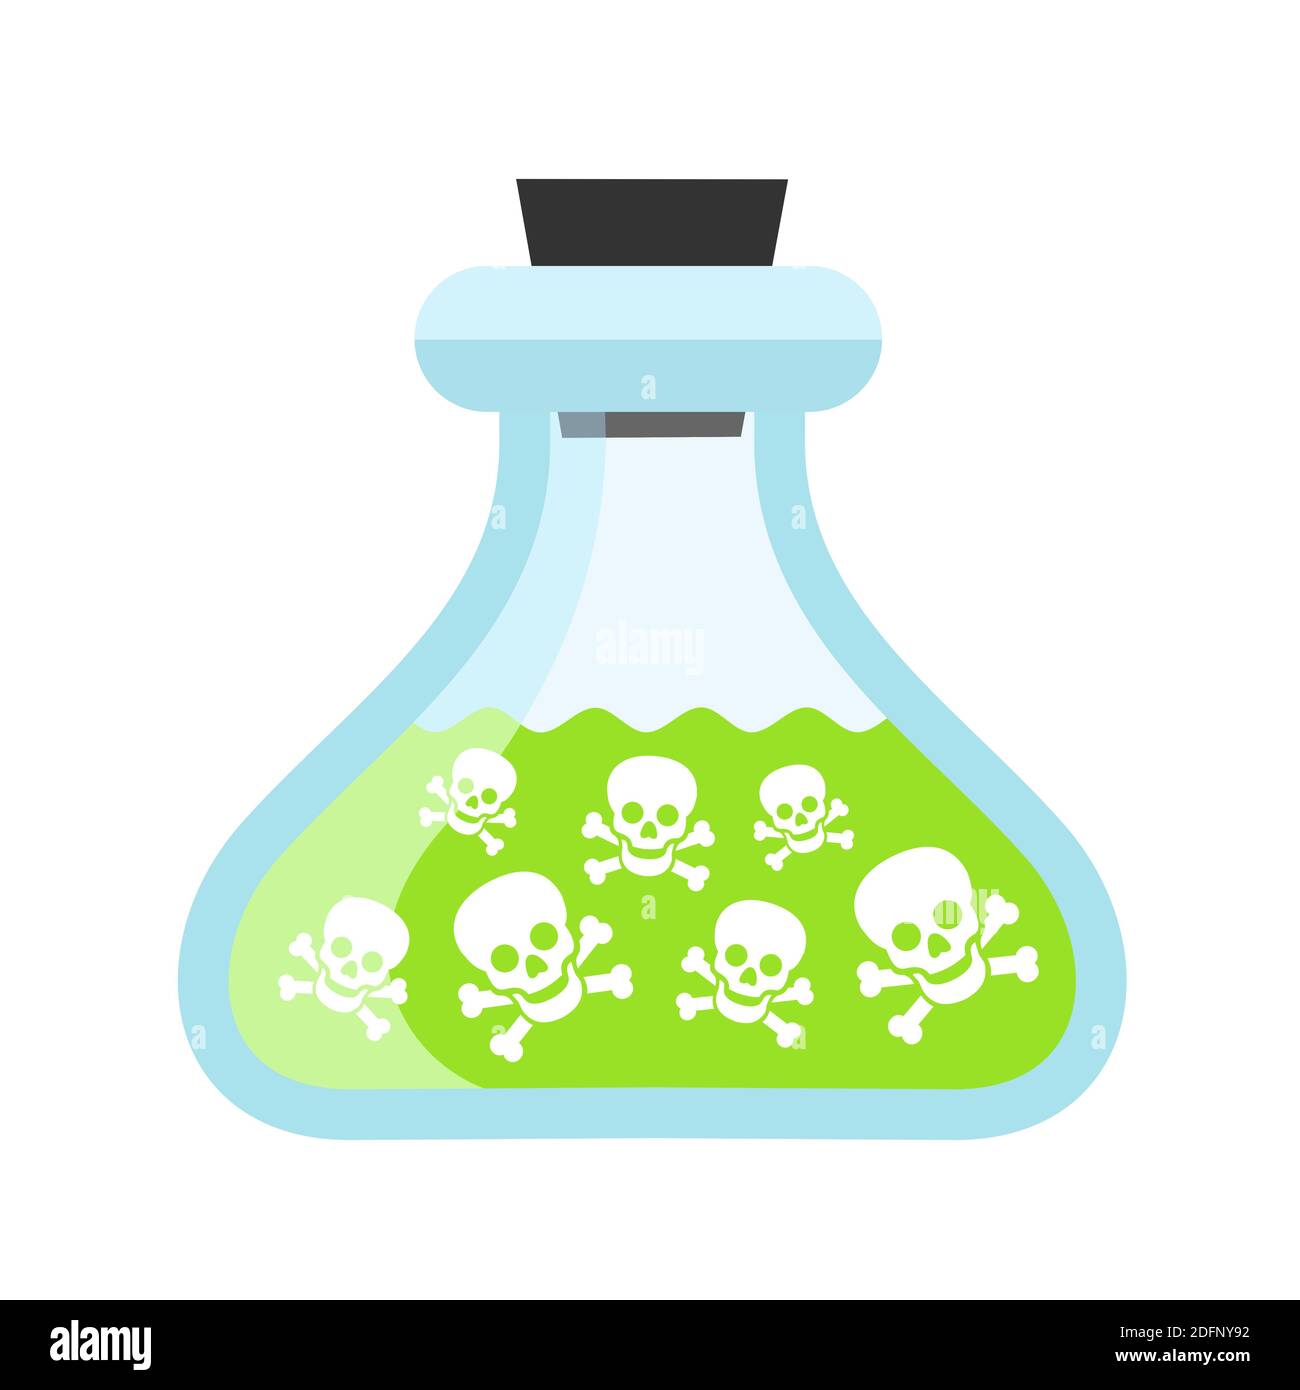 Le poison est la verrerie de laboratoire - notification, avertissement et mise en garde concernant les liquides et liquides dangereux Banque D'Images